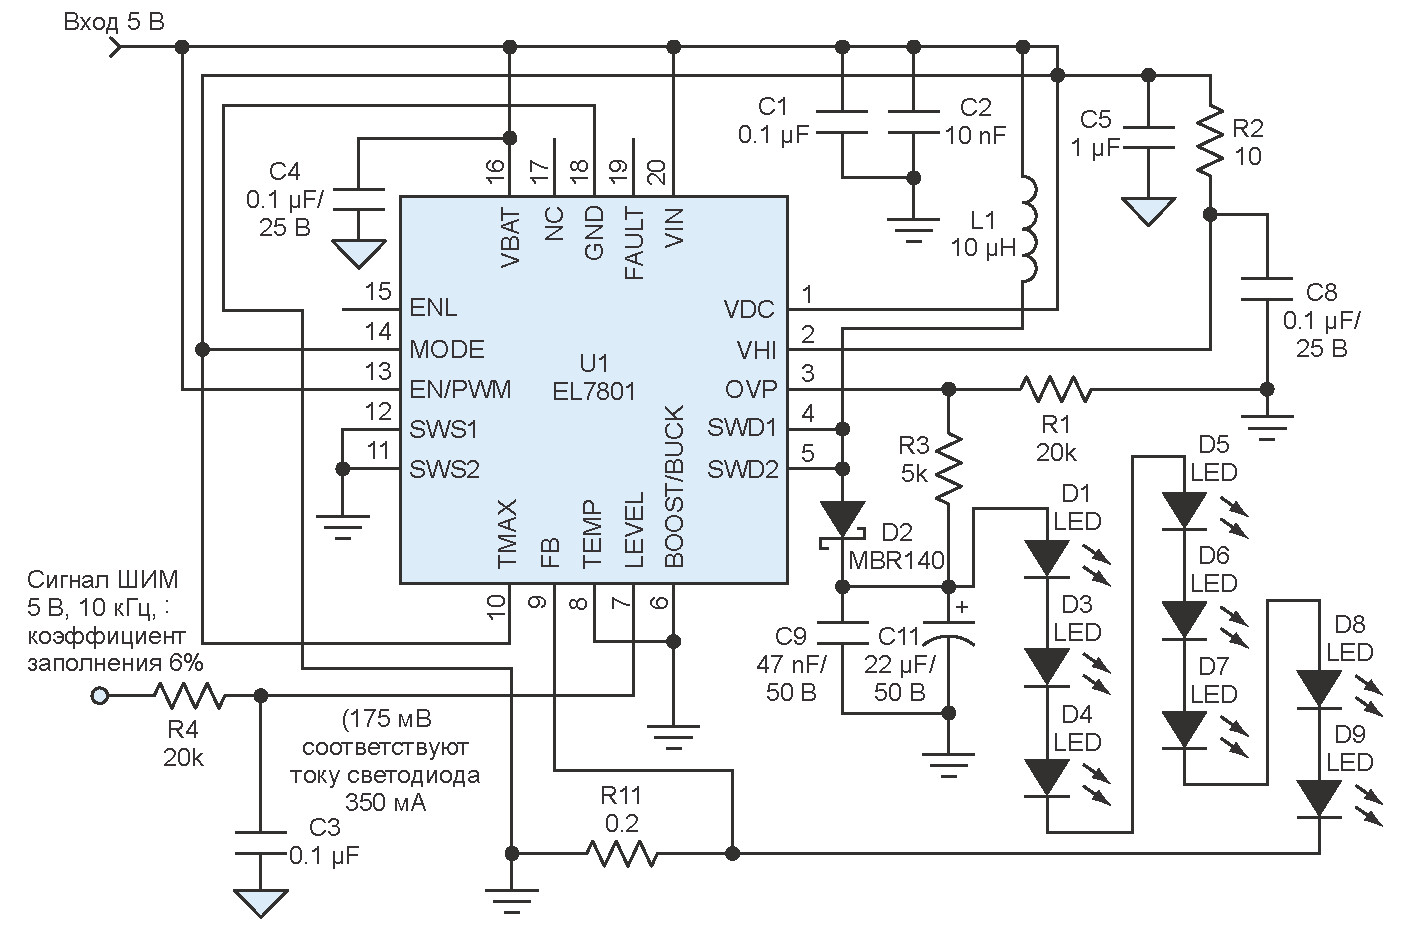 Использование повышающего драйвера светодиодов с выводом LEVEL, дополняющим вывод EN, и добавление к схеме драйвера RC фильтра нижних частот (R4-C3) уменьшает пульсации тока.